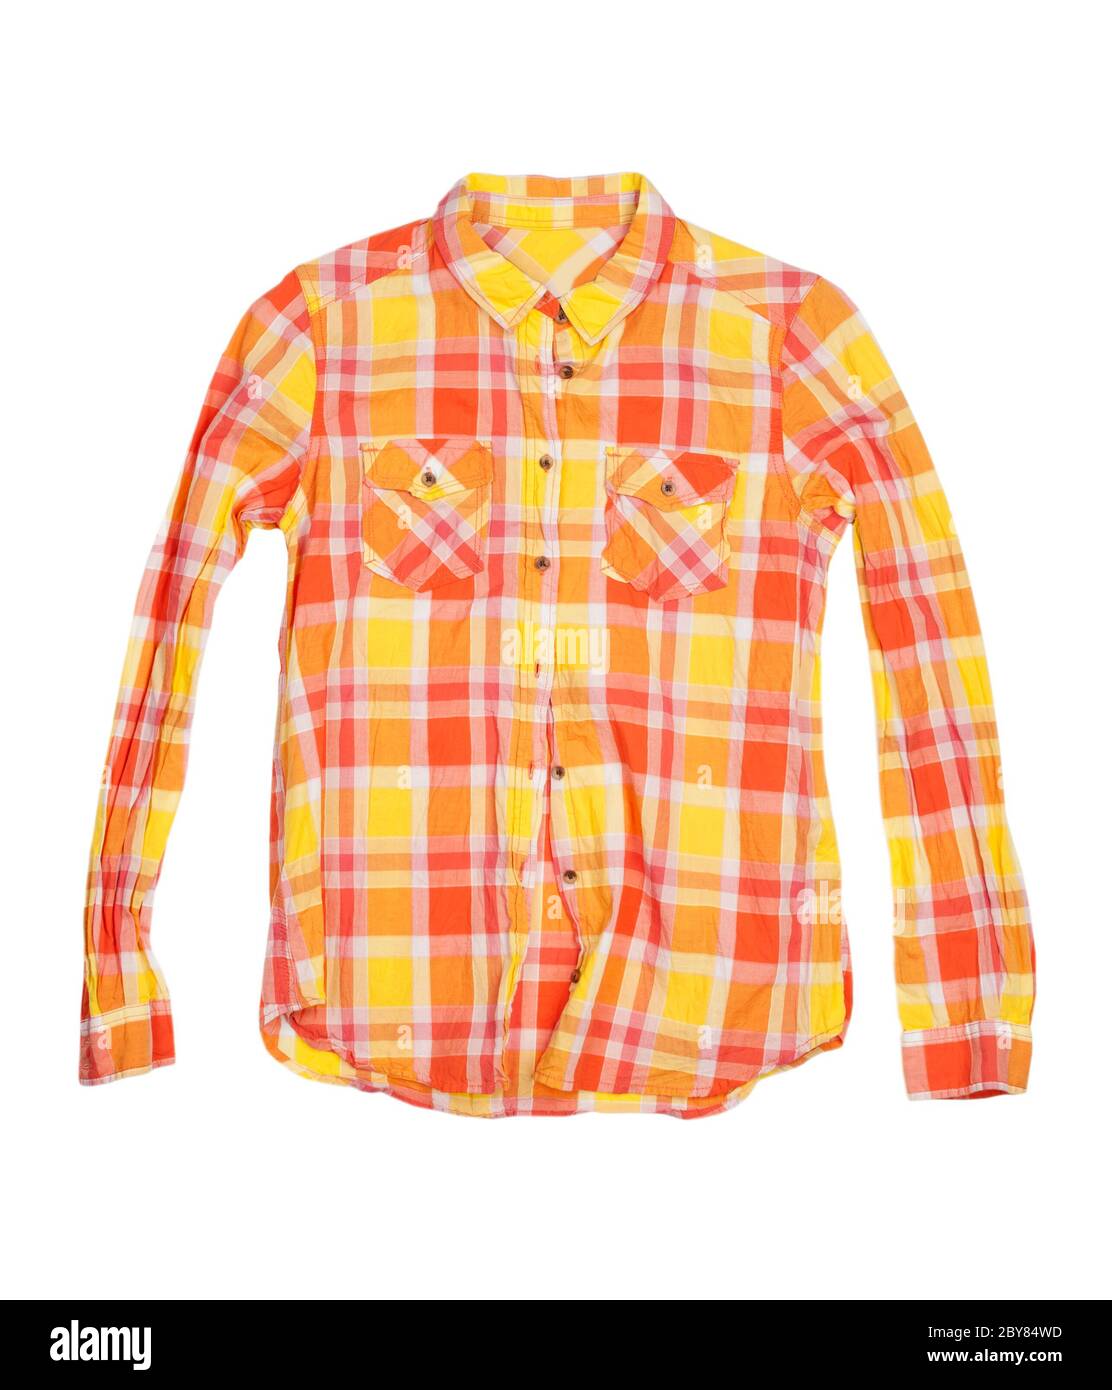 orange checkered shirt isolated on white background Stock Photo